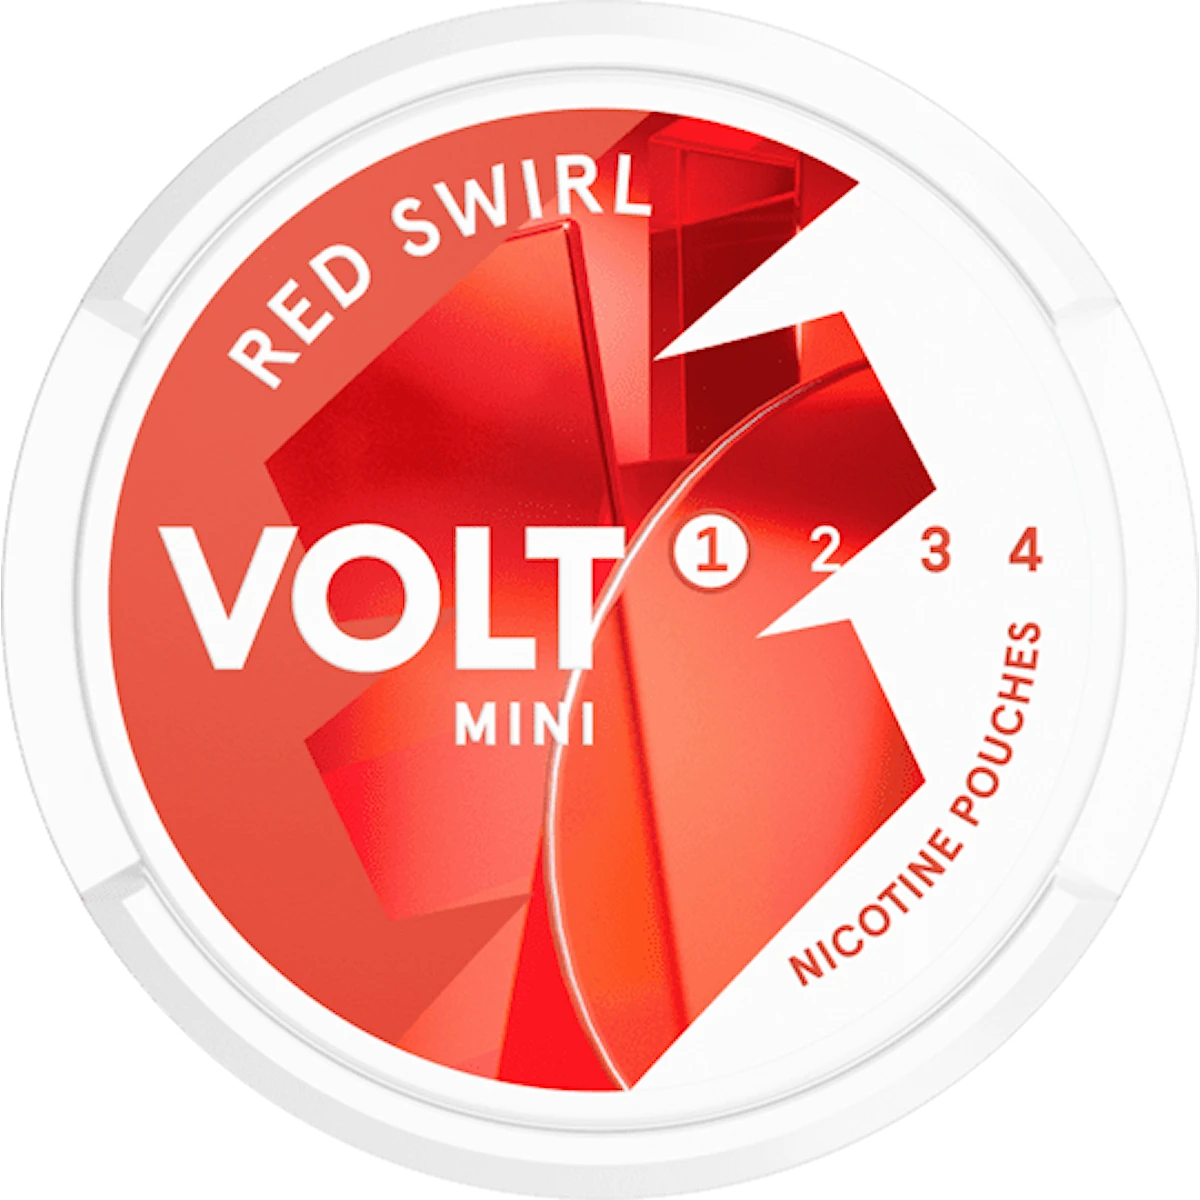 VOLT Red Swirl Mini Low